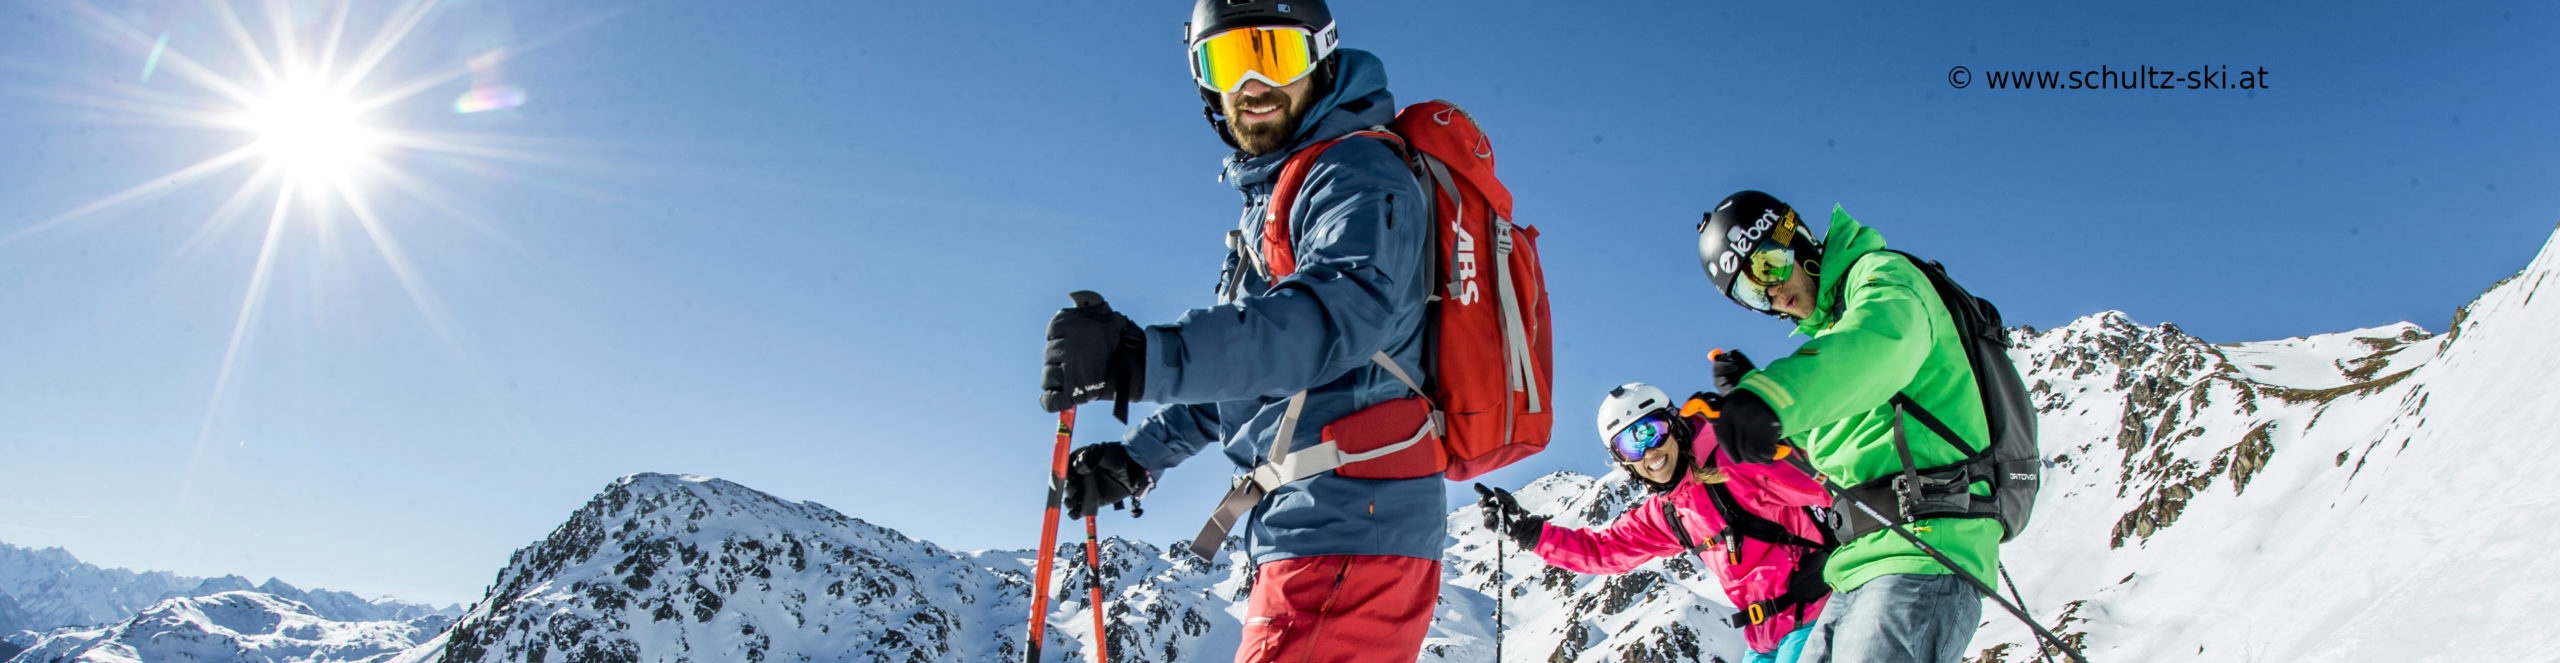 ZILLERTAL – verlängertes Skiwochenende mit 3 Skitagen – in den Weihnachtsferien – ab Mittwoch nachmittag 